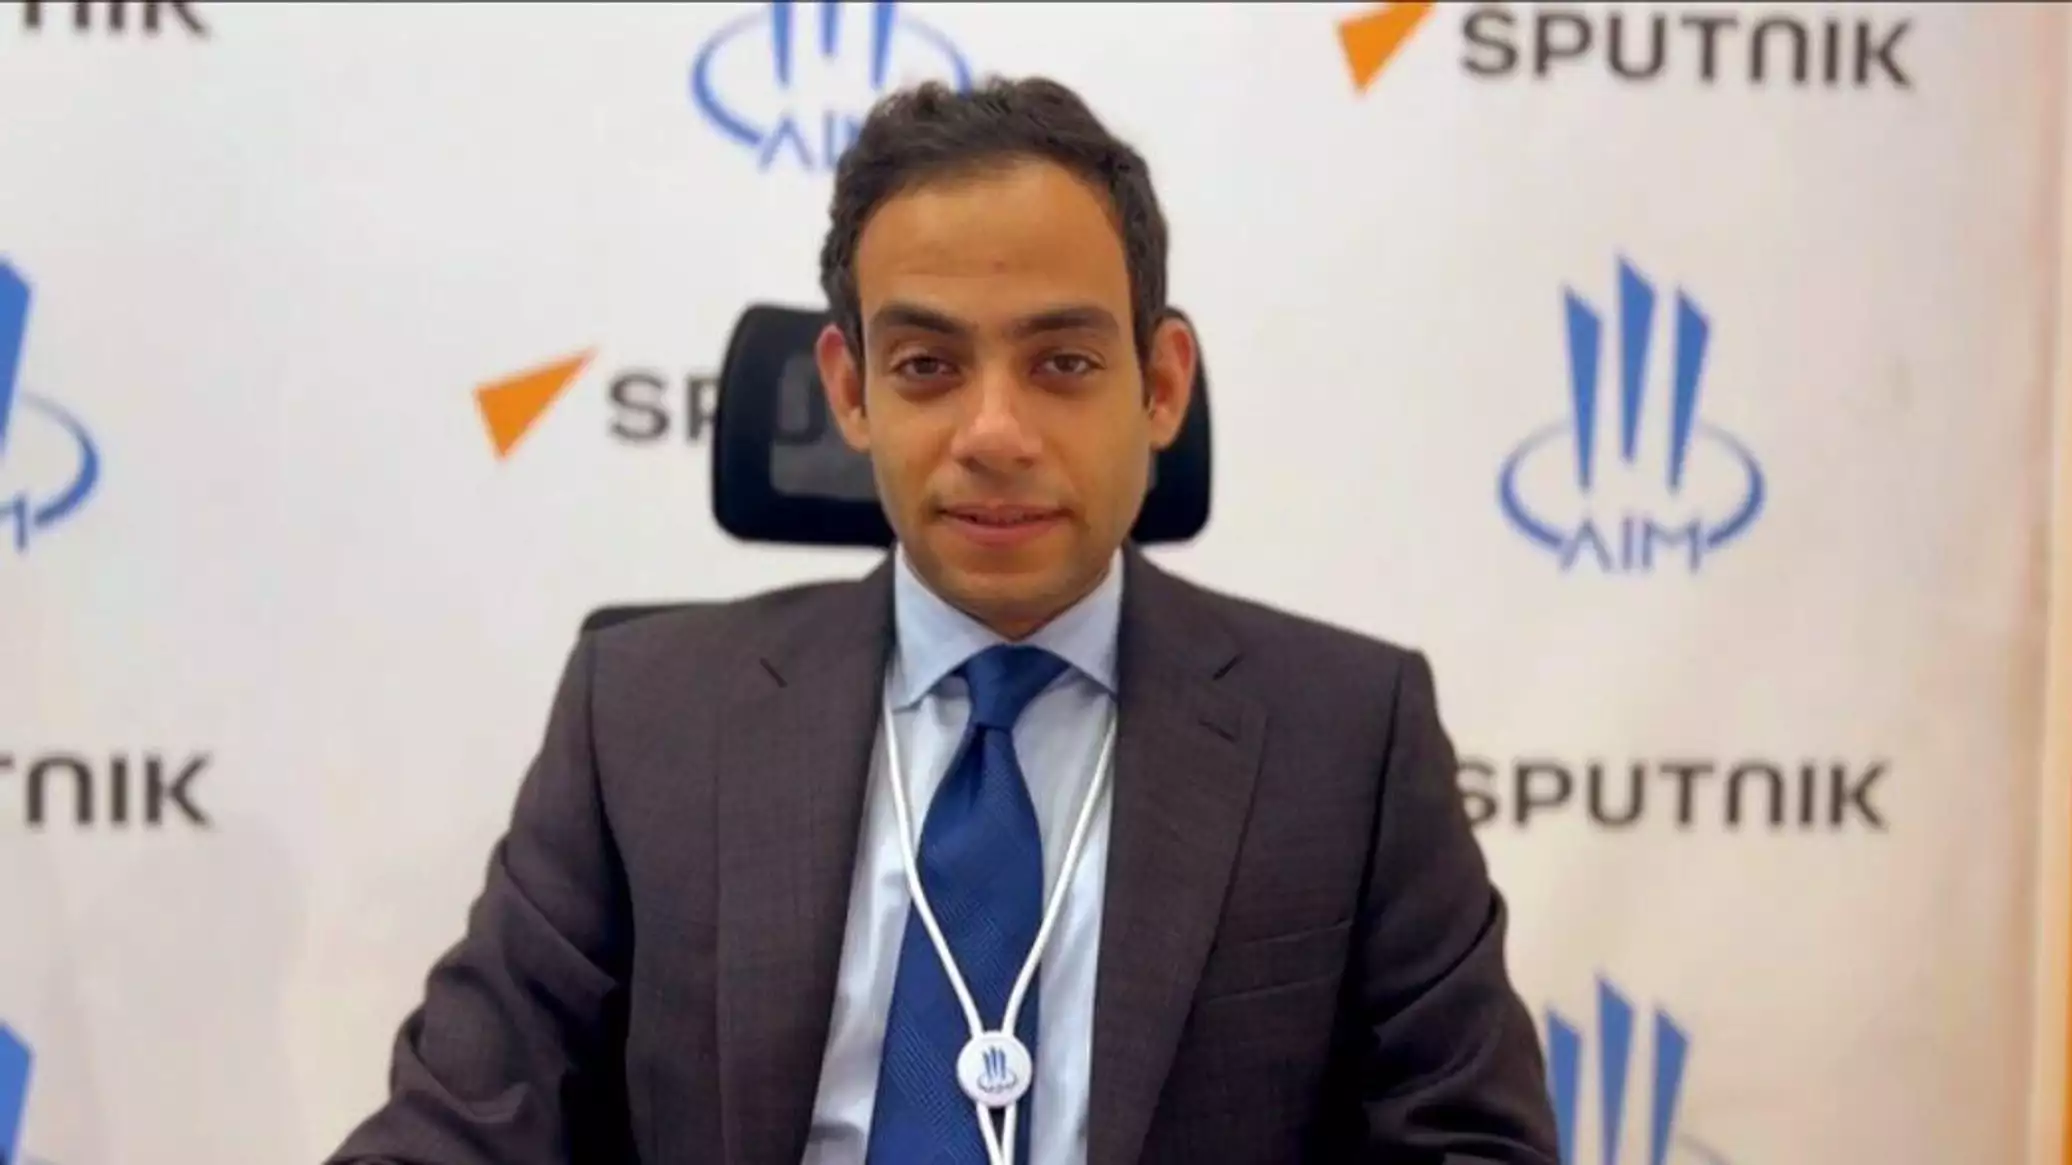 مساعد وزير الصحة المصري لـ"سبوتنيك": مصر تتوجه بشكل عام لتوطين الصناعات الدوائية واللقاحات